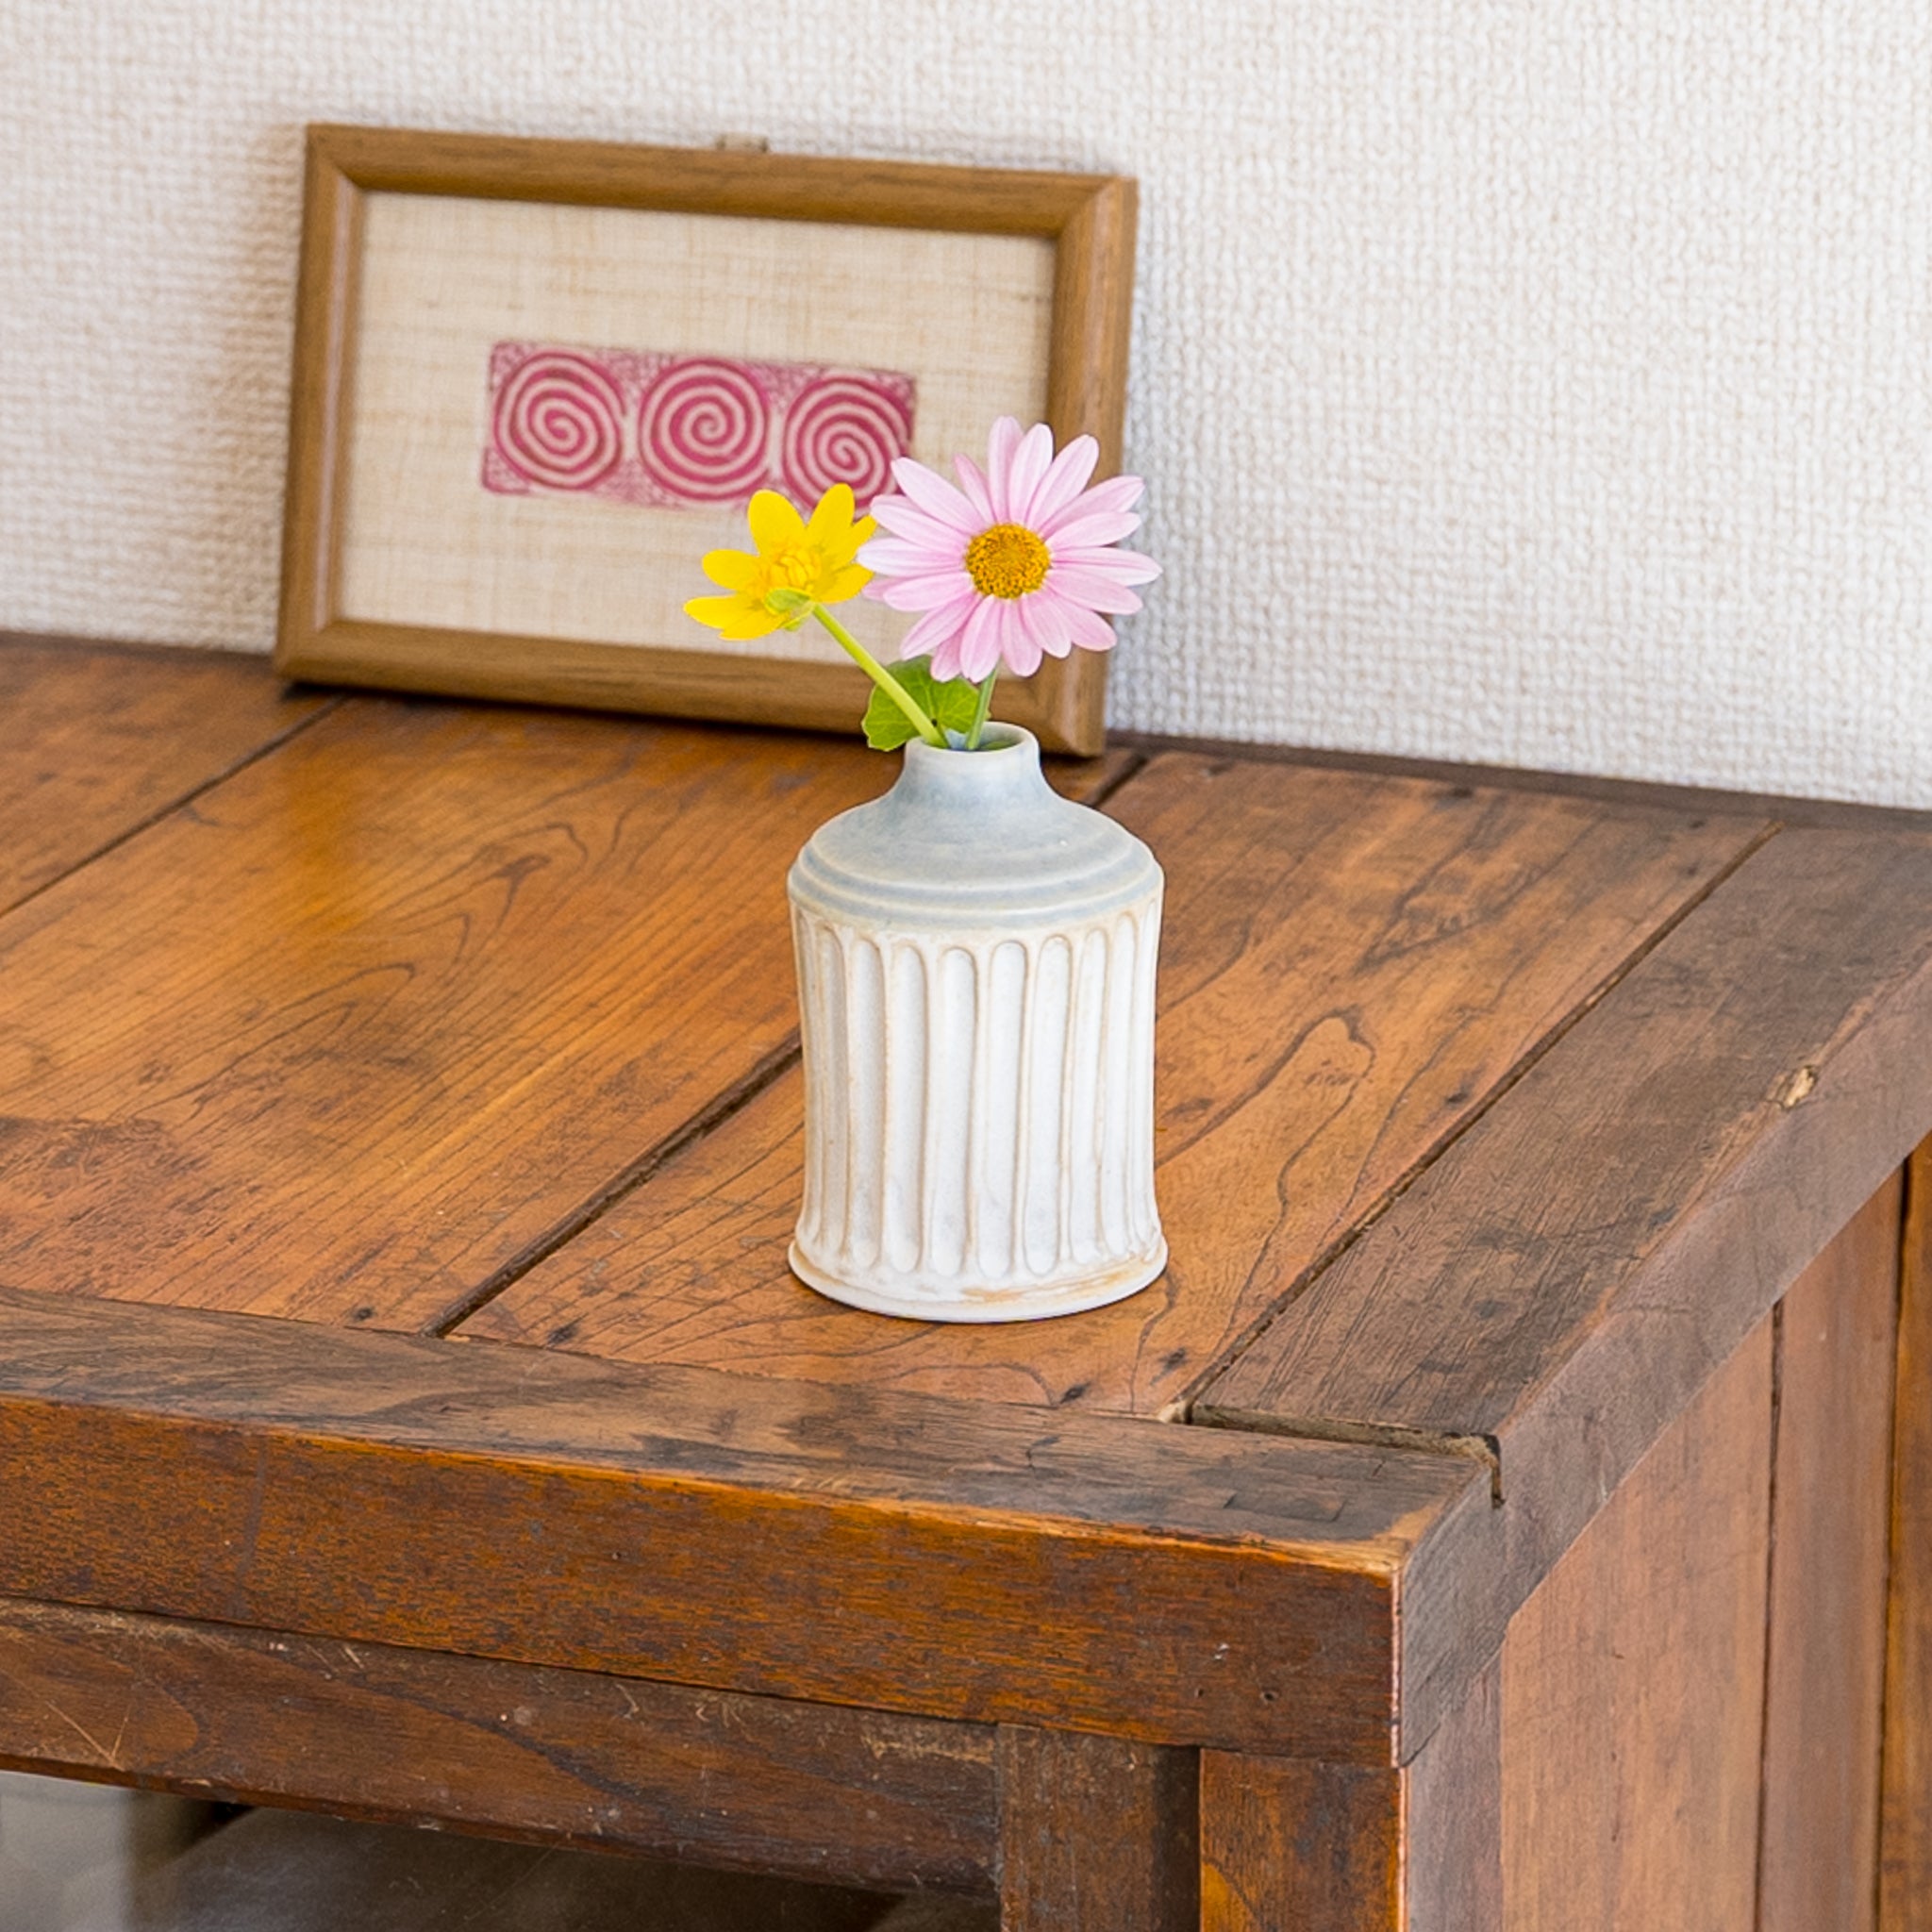 お部屋を明るく楽しい雰囲気に変えてくれる田中志保さんの花器